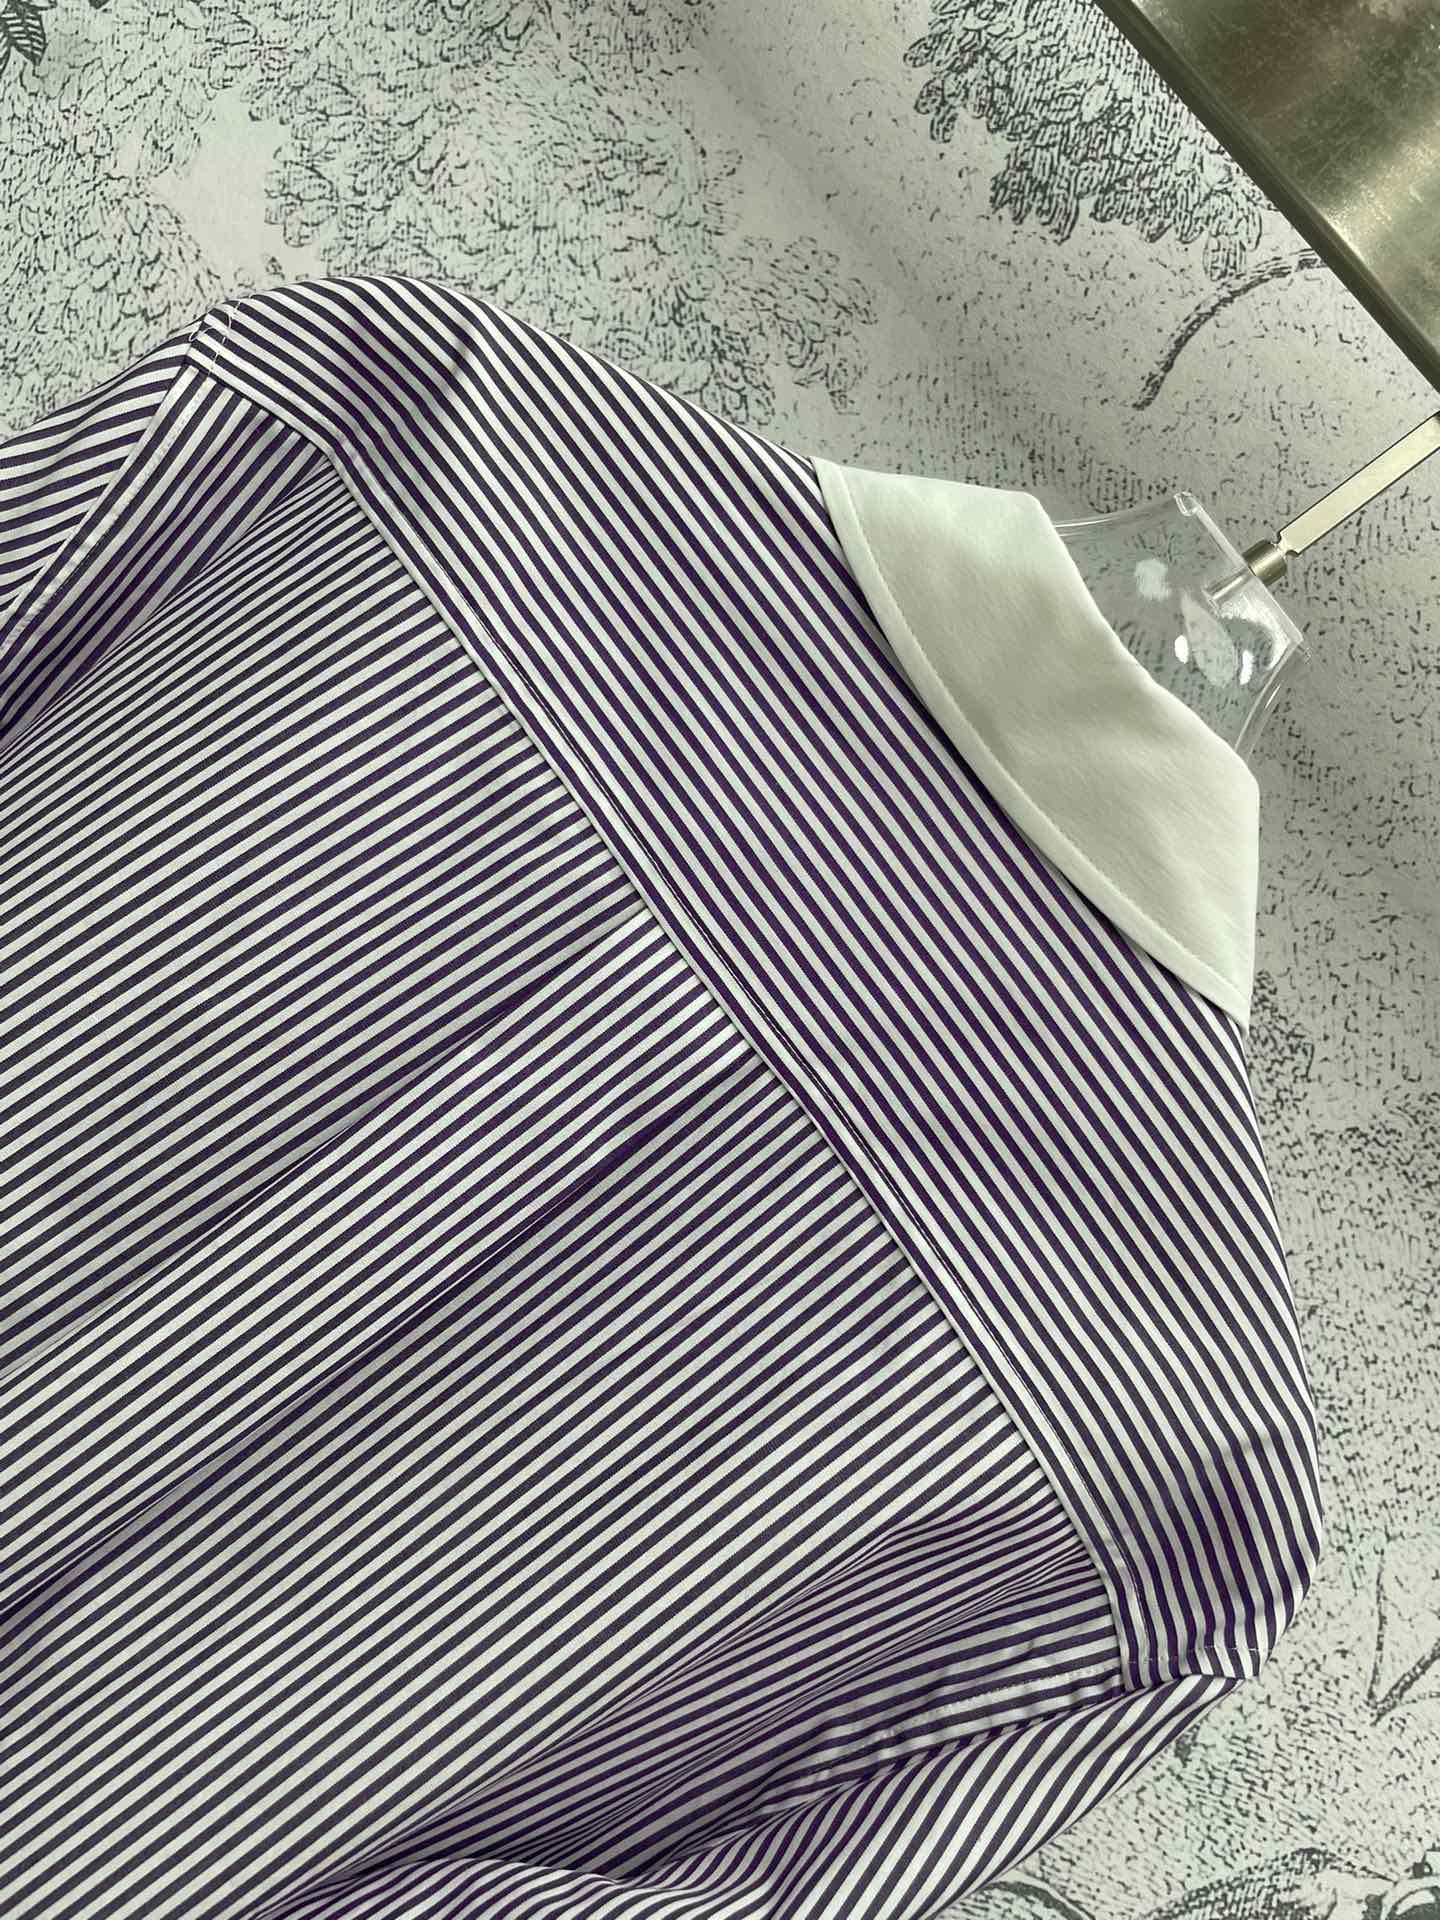 miu家24春夏字母logo刺绣条纹衬衫紫白色条纹清新又很特别搭配白色领子很时髦的视觉感自然剪边短款设计